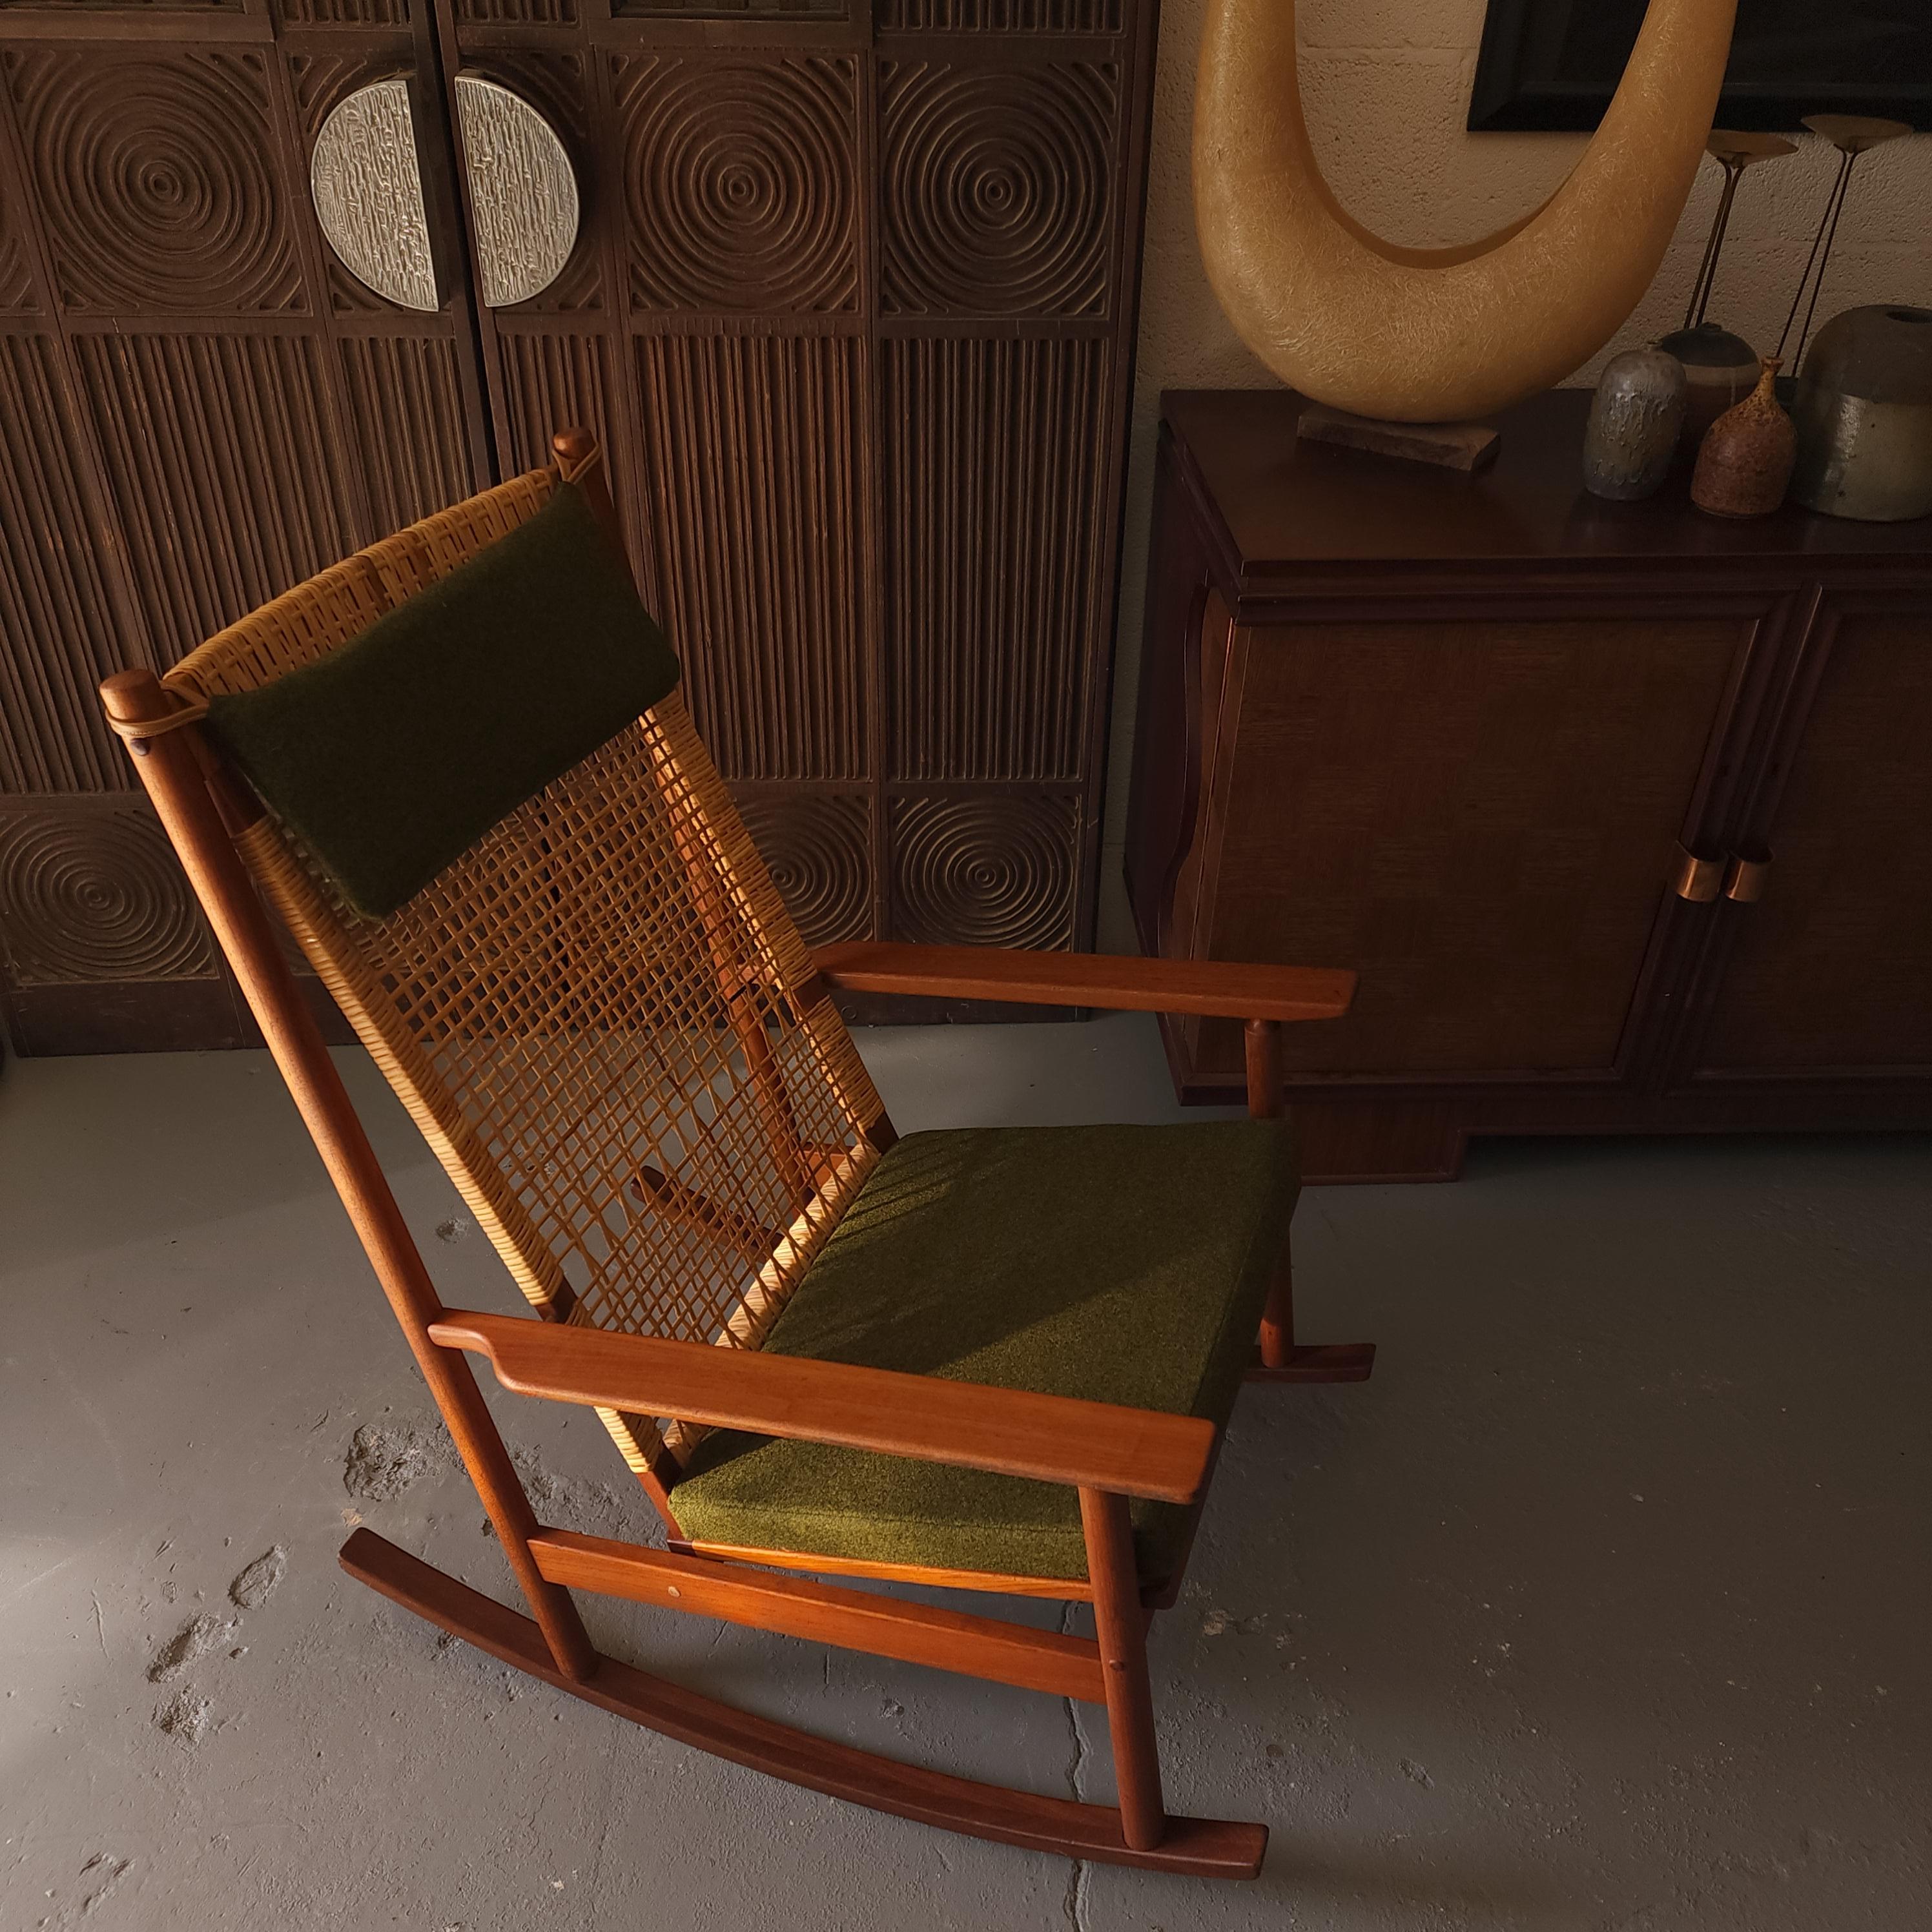 Chaises à bascule en teck et en rotin des années 960, conçues par Hans Olsen pour Juul Kristensen. Cette chaise est fabriquée en teck ancien d'une teinte rougeâtre qui contraste joliment avec le cannage naturel et les accents en laiton. Nous avons